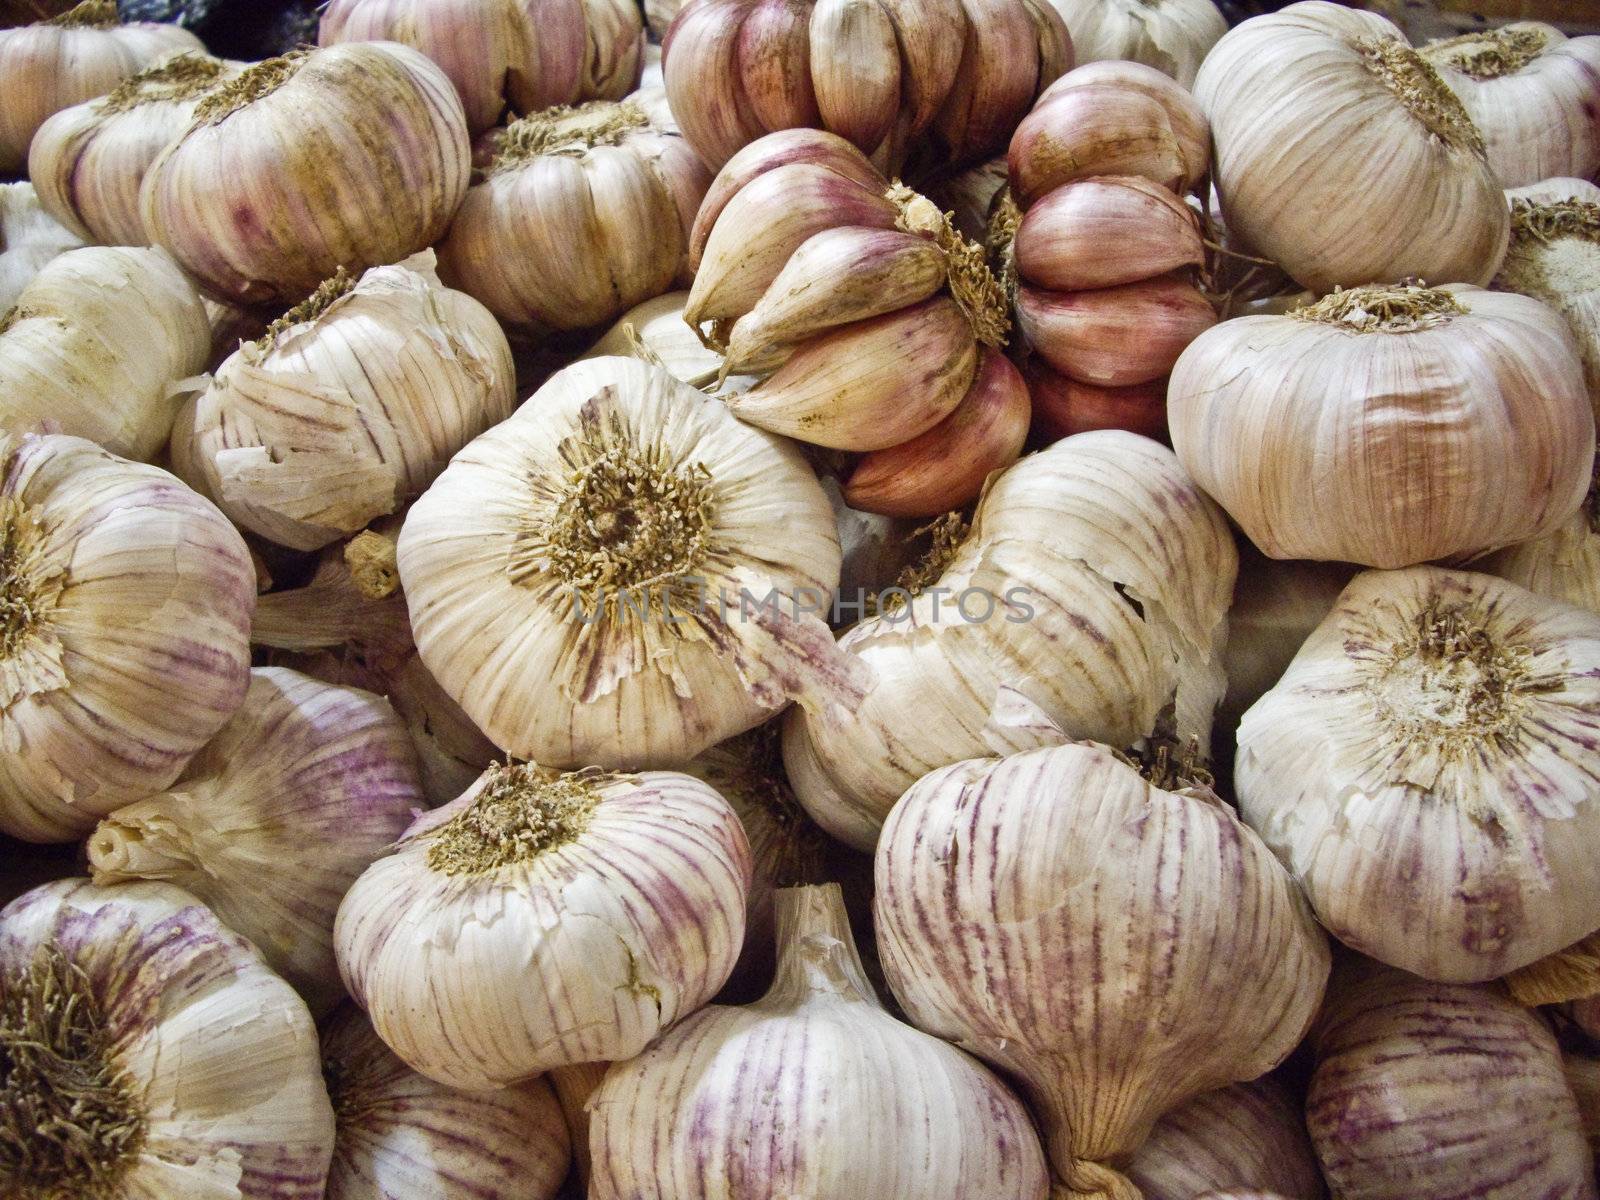 Garlic on display at Mexican market